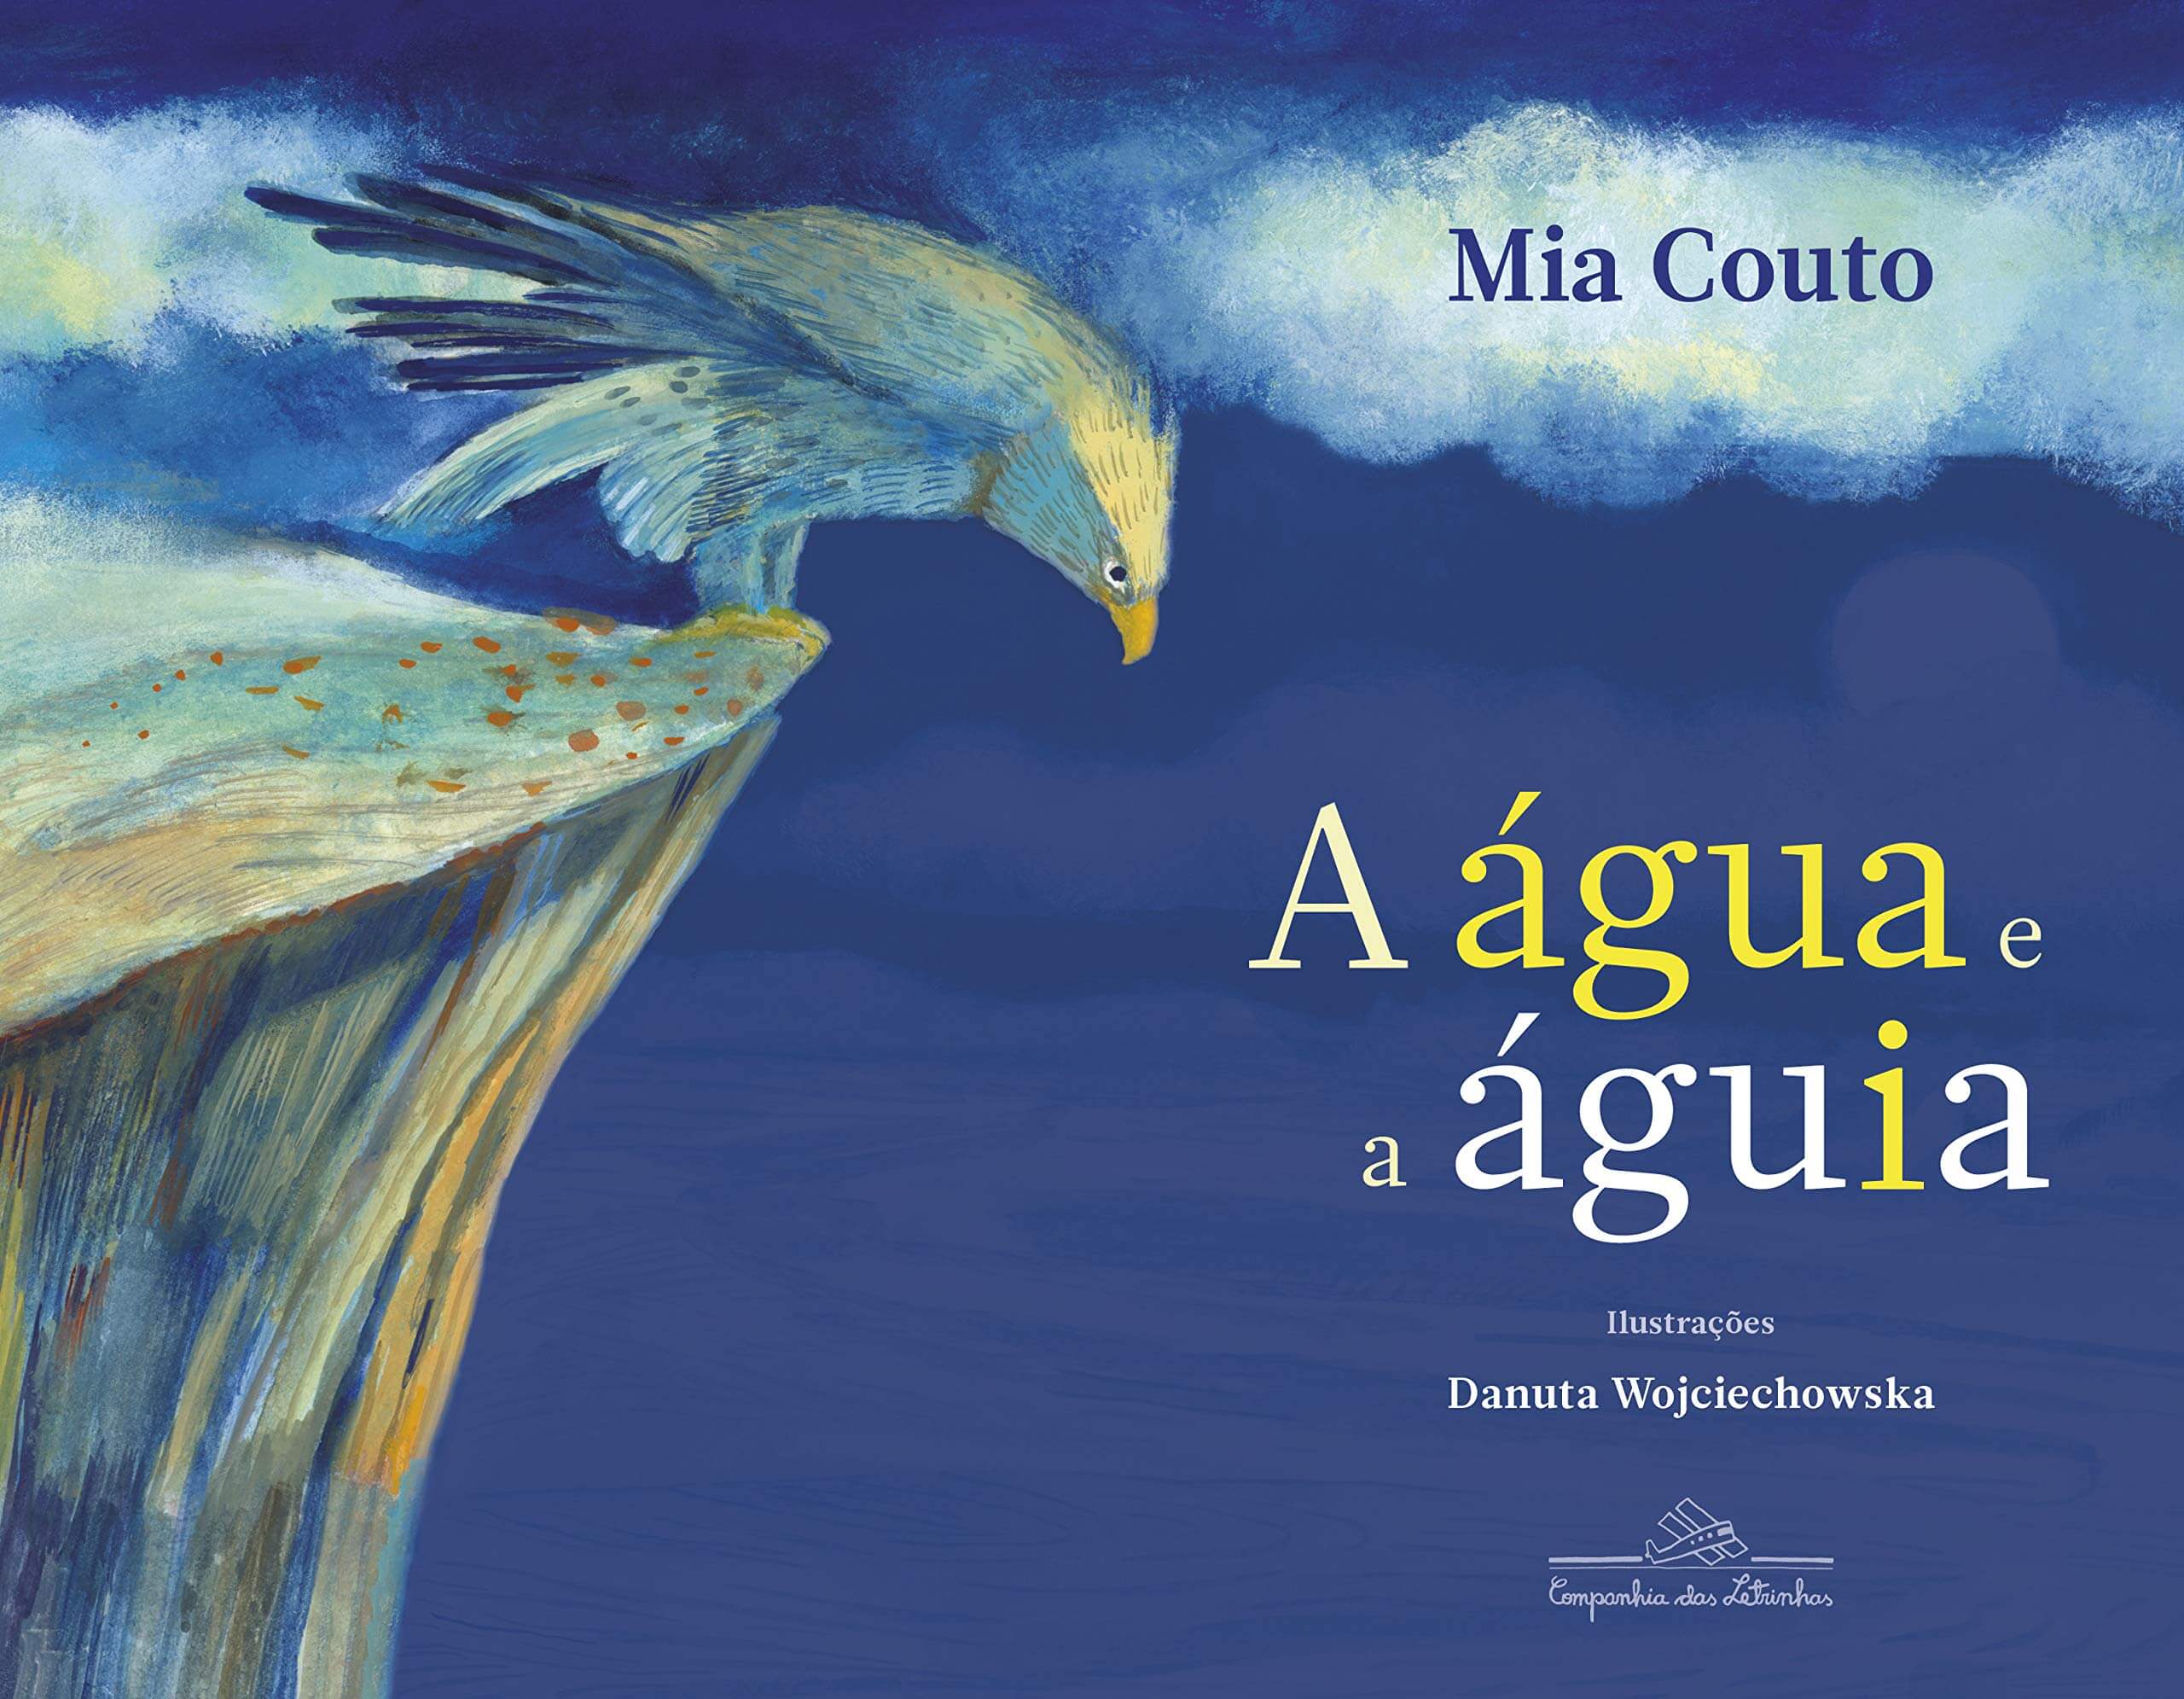 Capa do livro ”A água e a águia” de Mia Couto, imagem de uma águia em cima de pedra